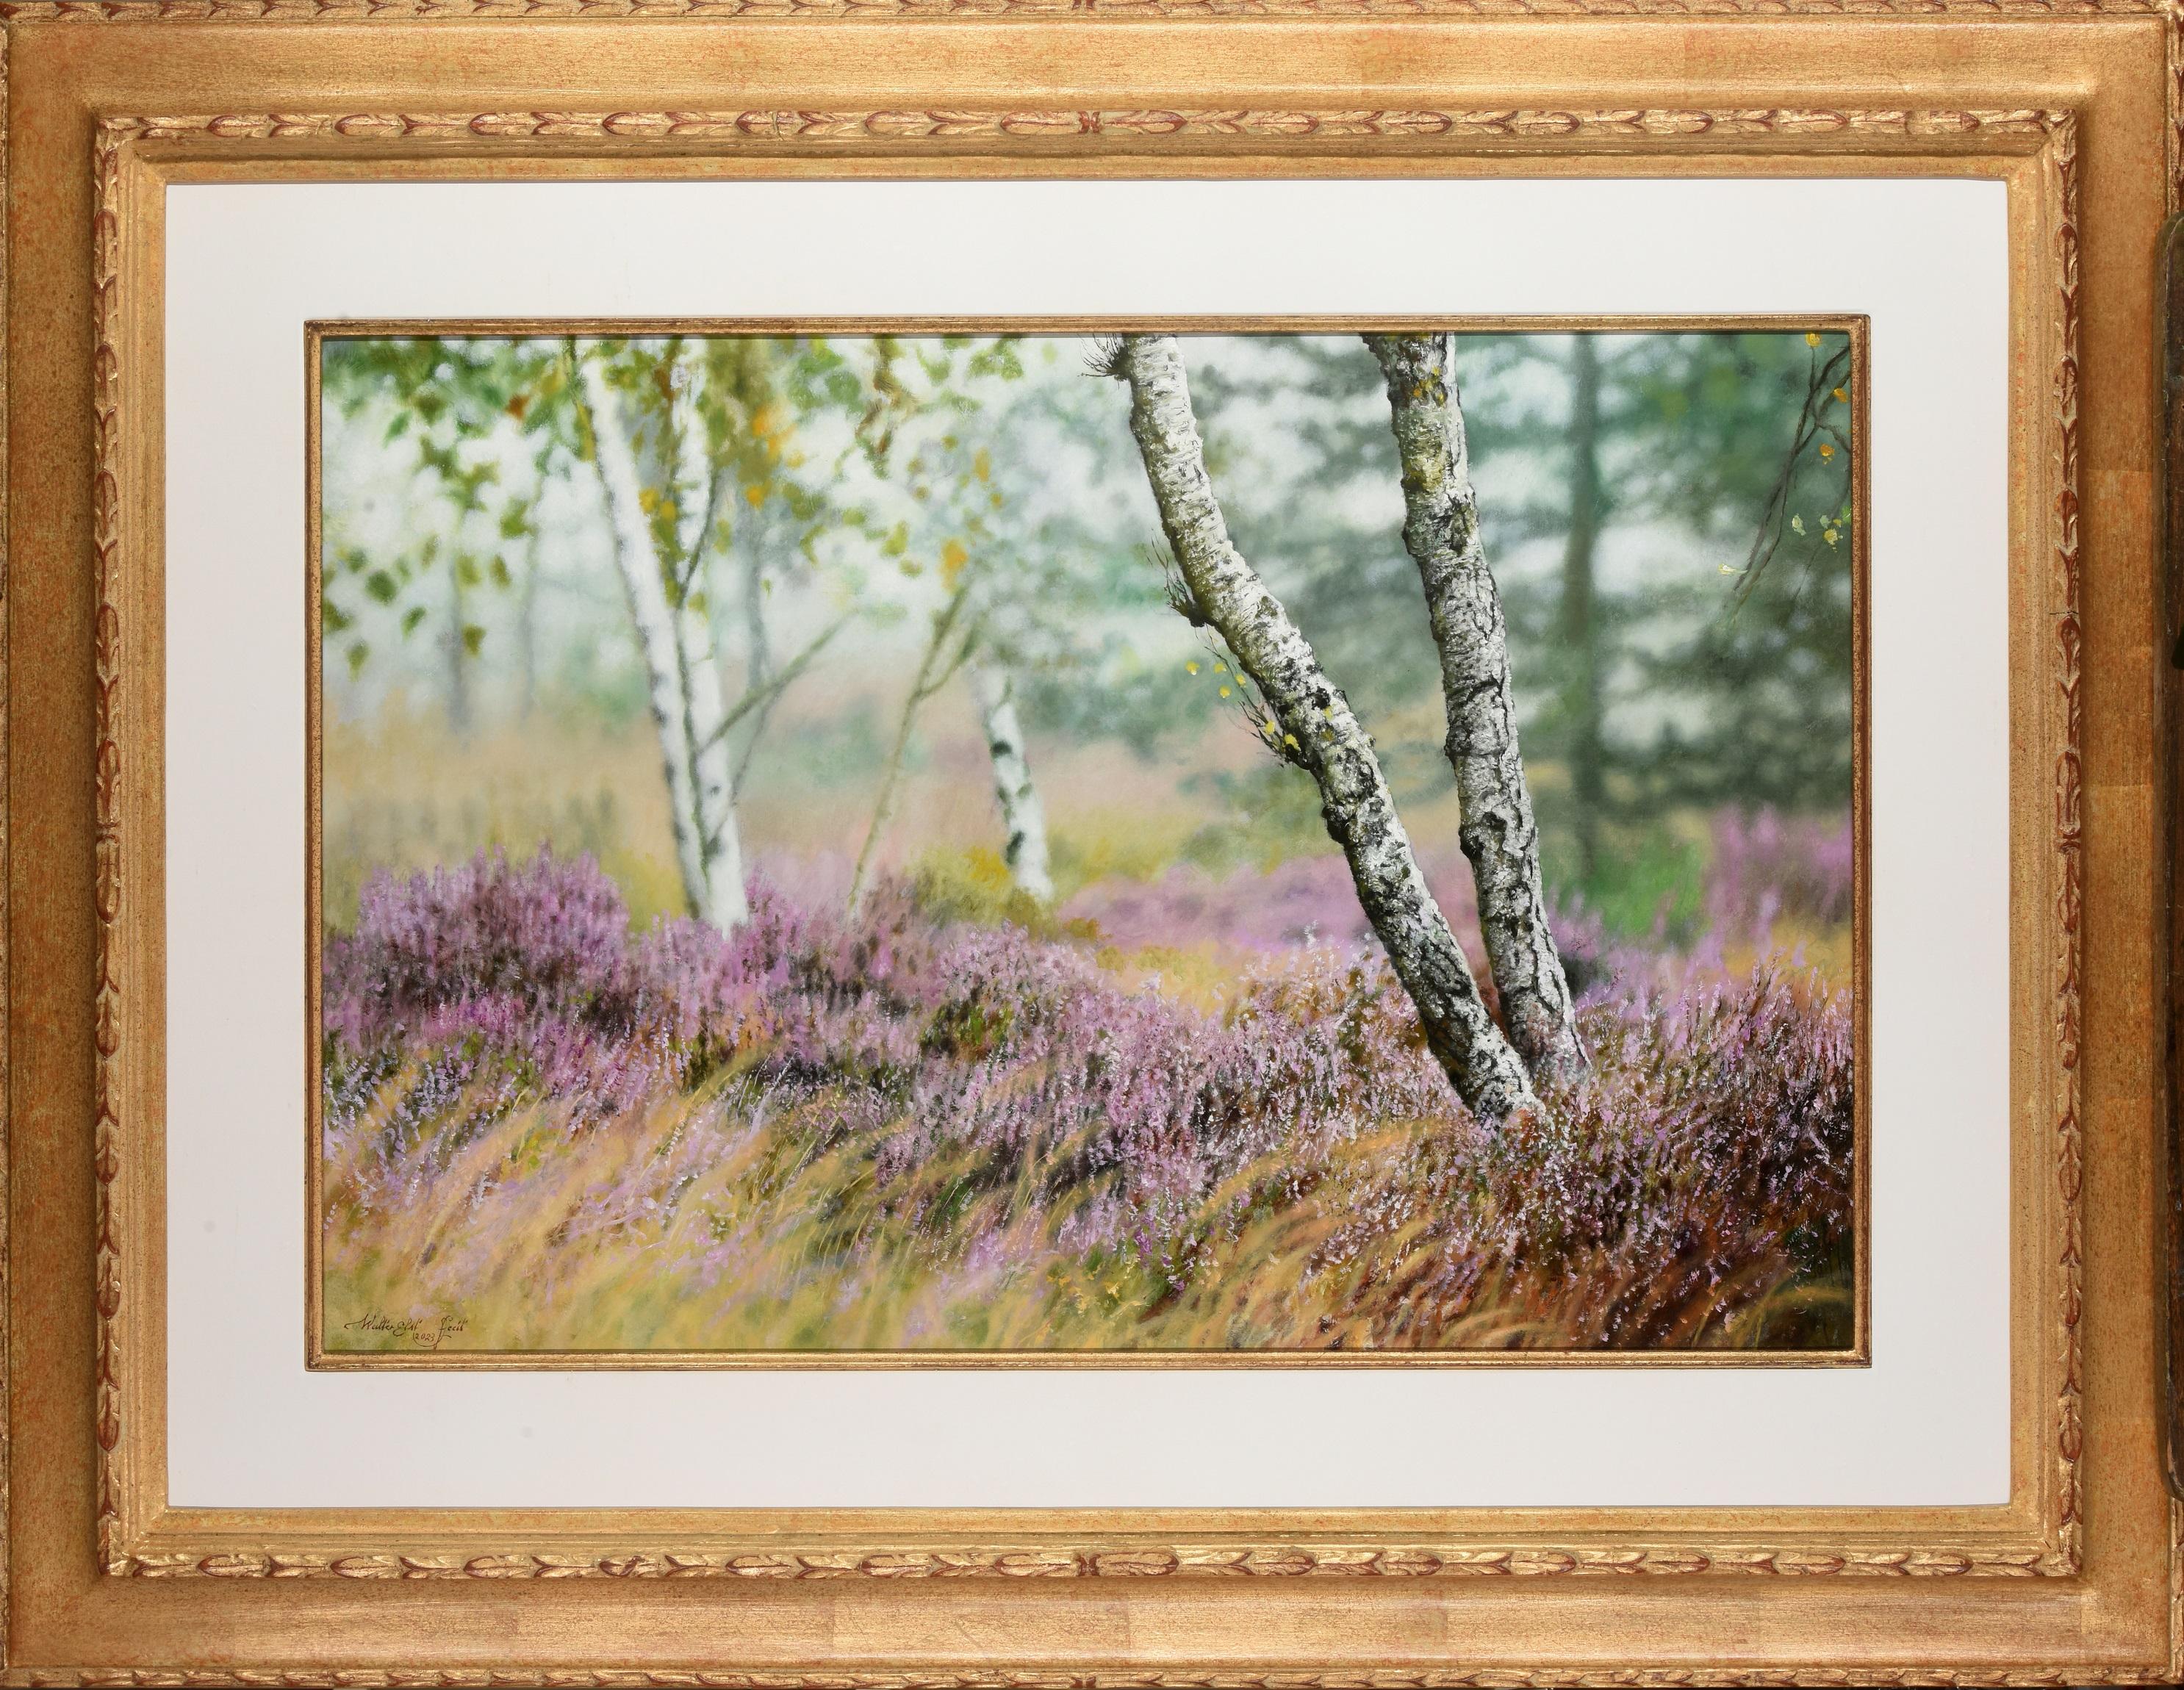 Walter Elst Landscape Painting - Heide in Bloei Heather in Bloom Oil Painting on Panel Landscape In Stock